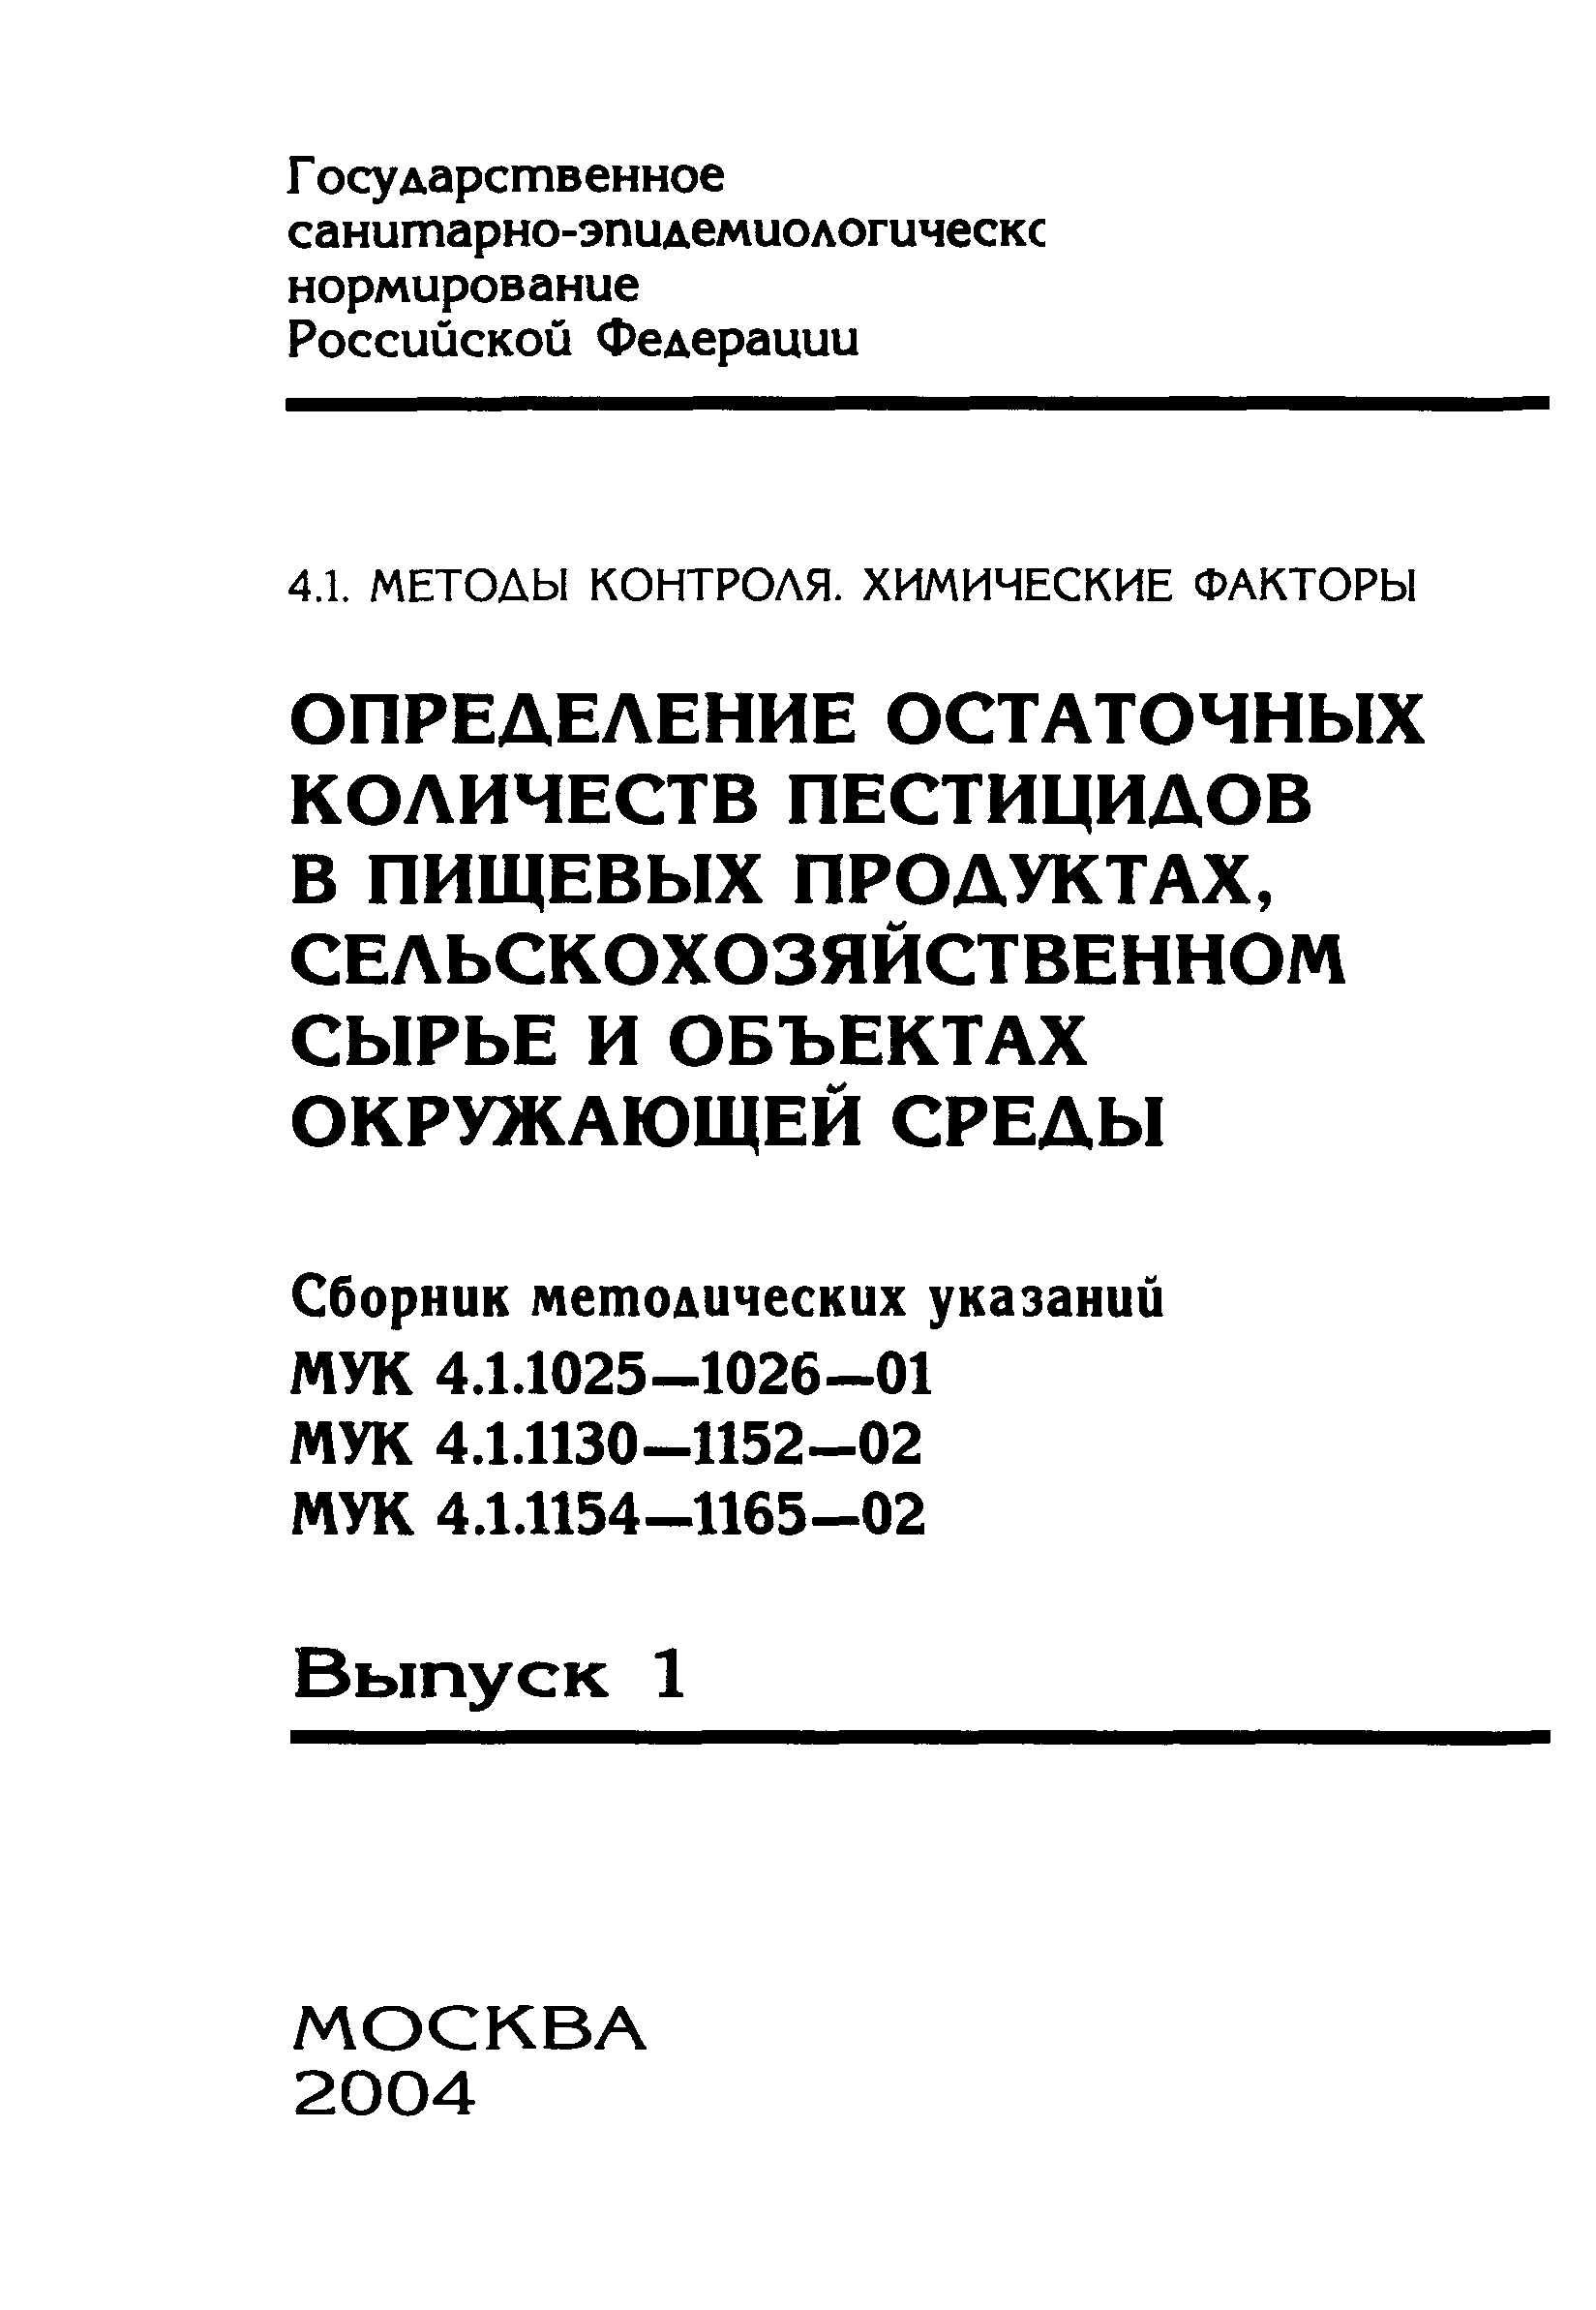 МУК 4.1.1159-02